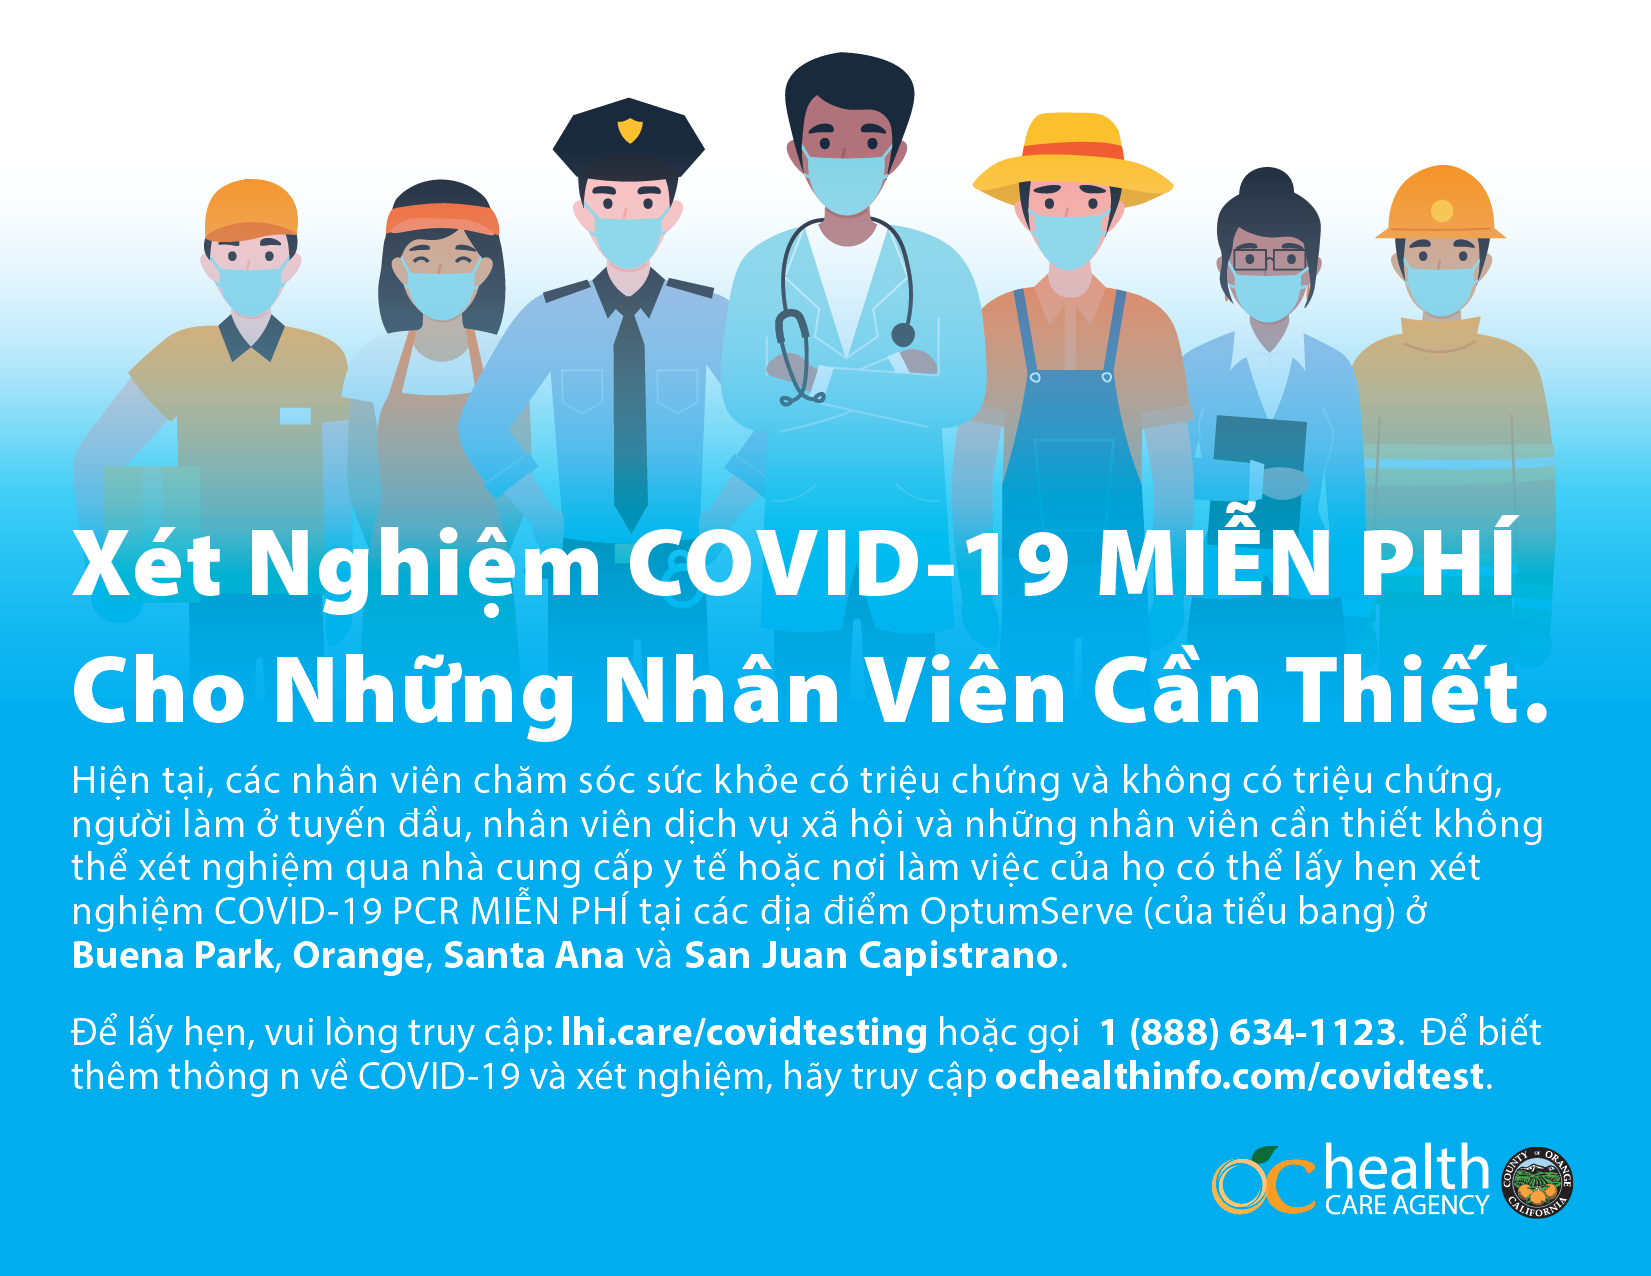 COVID Testing V2 (Vietnamese)